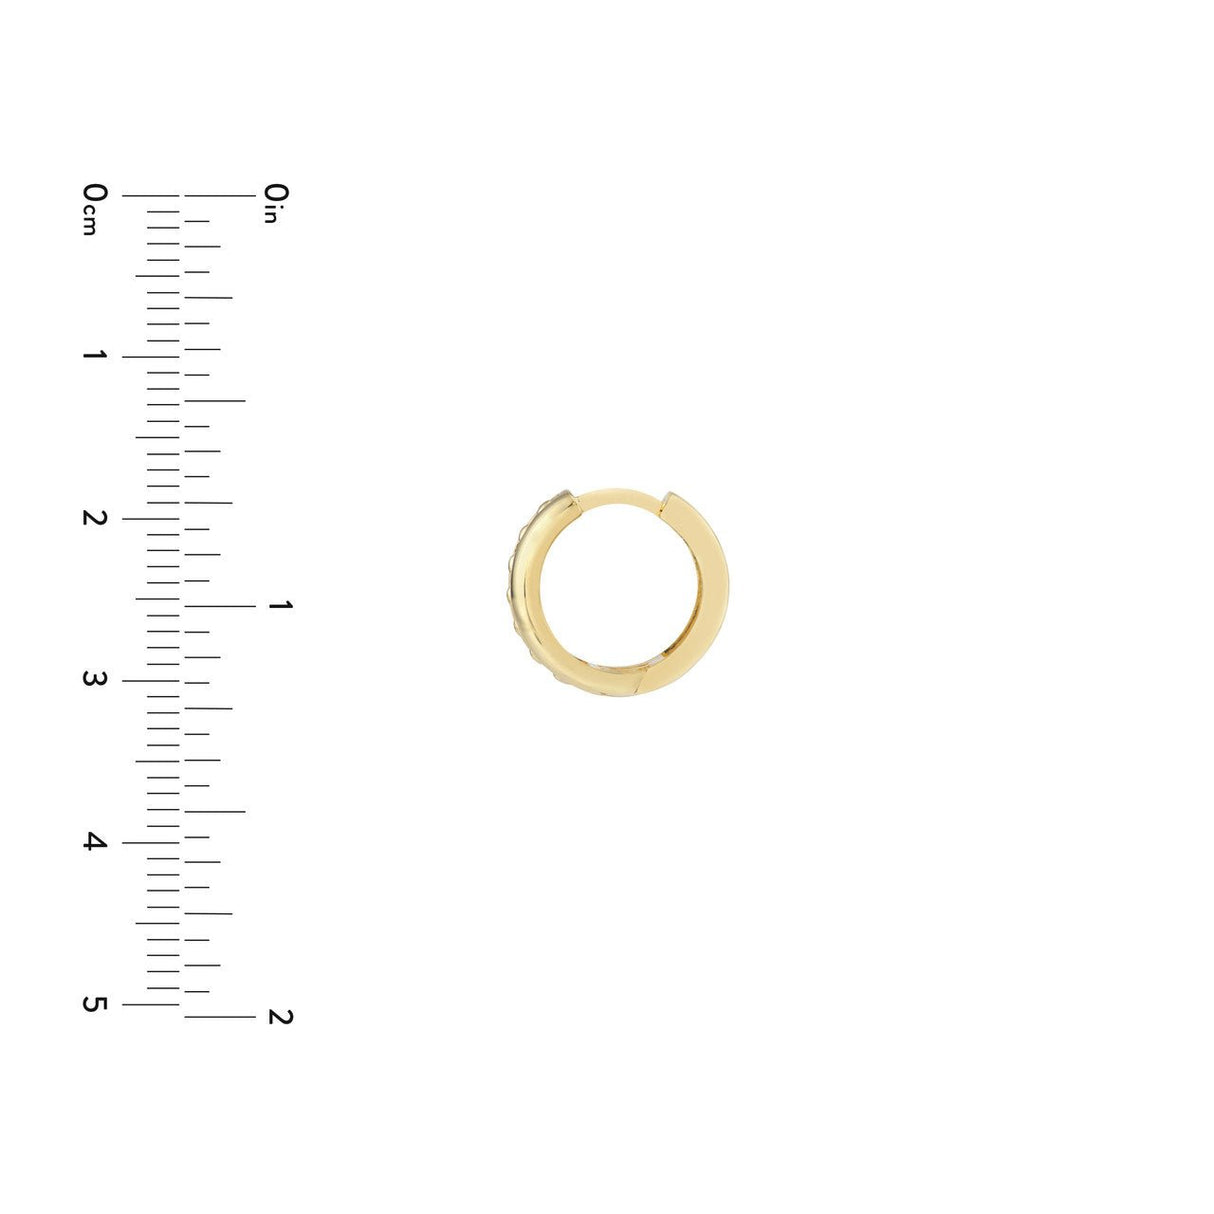 14K Solid Gold 13x5.5mm 1/2 Channel Beaded Huggie Earrings, Hoop Earrings, - Diamond Origin